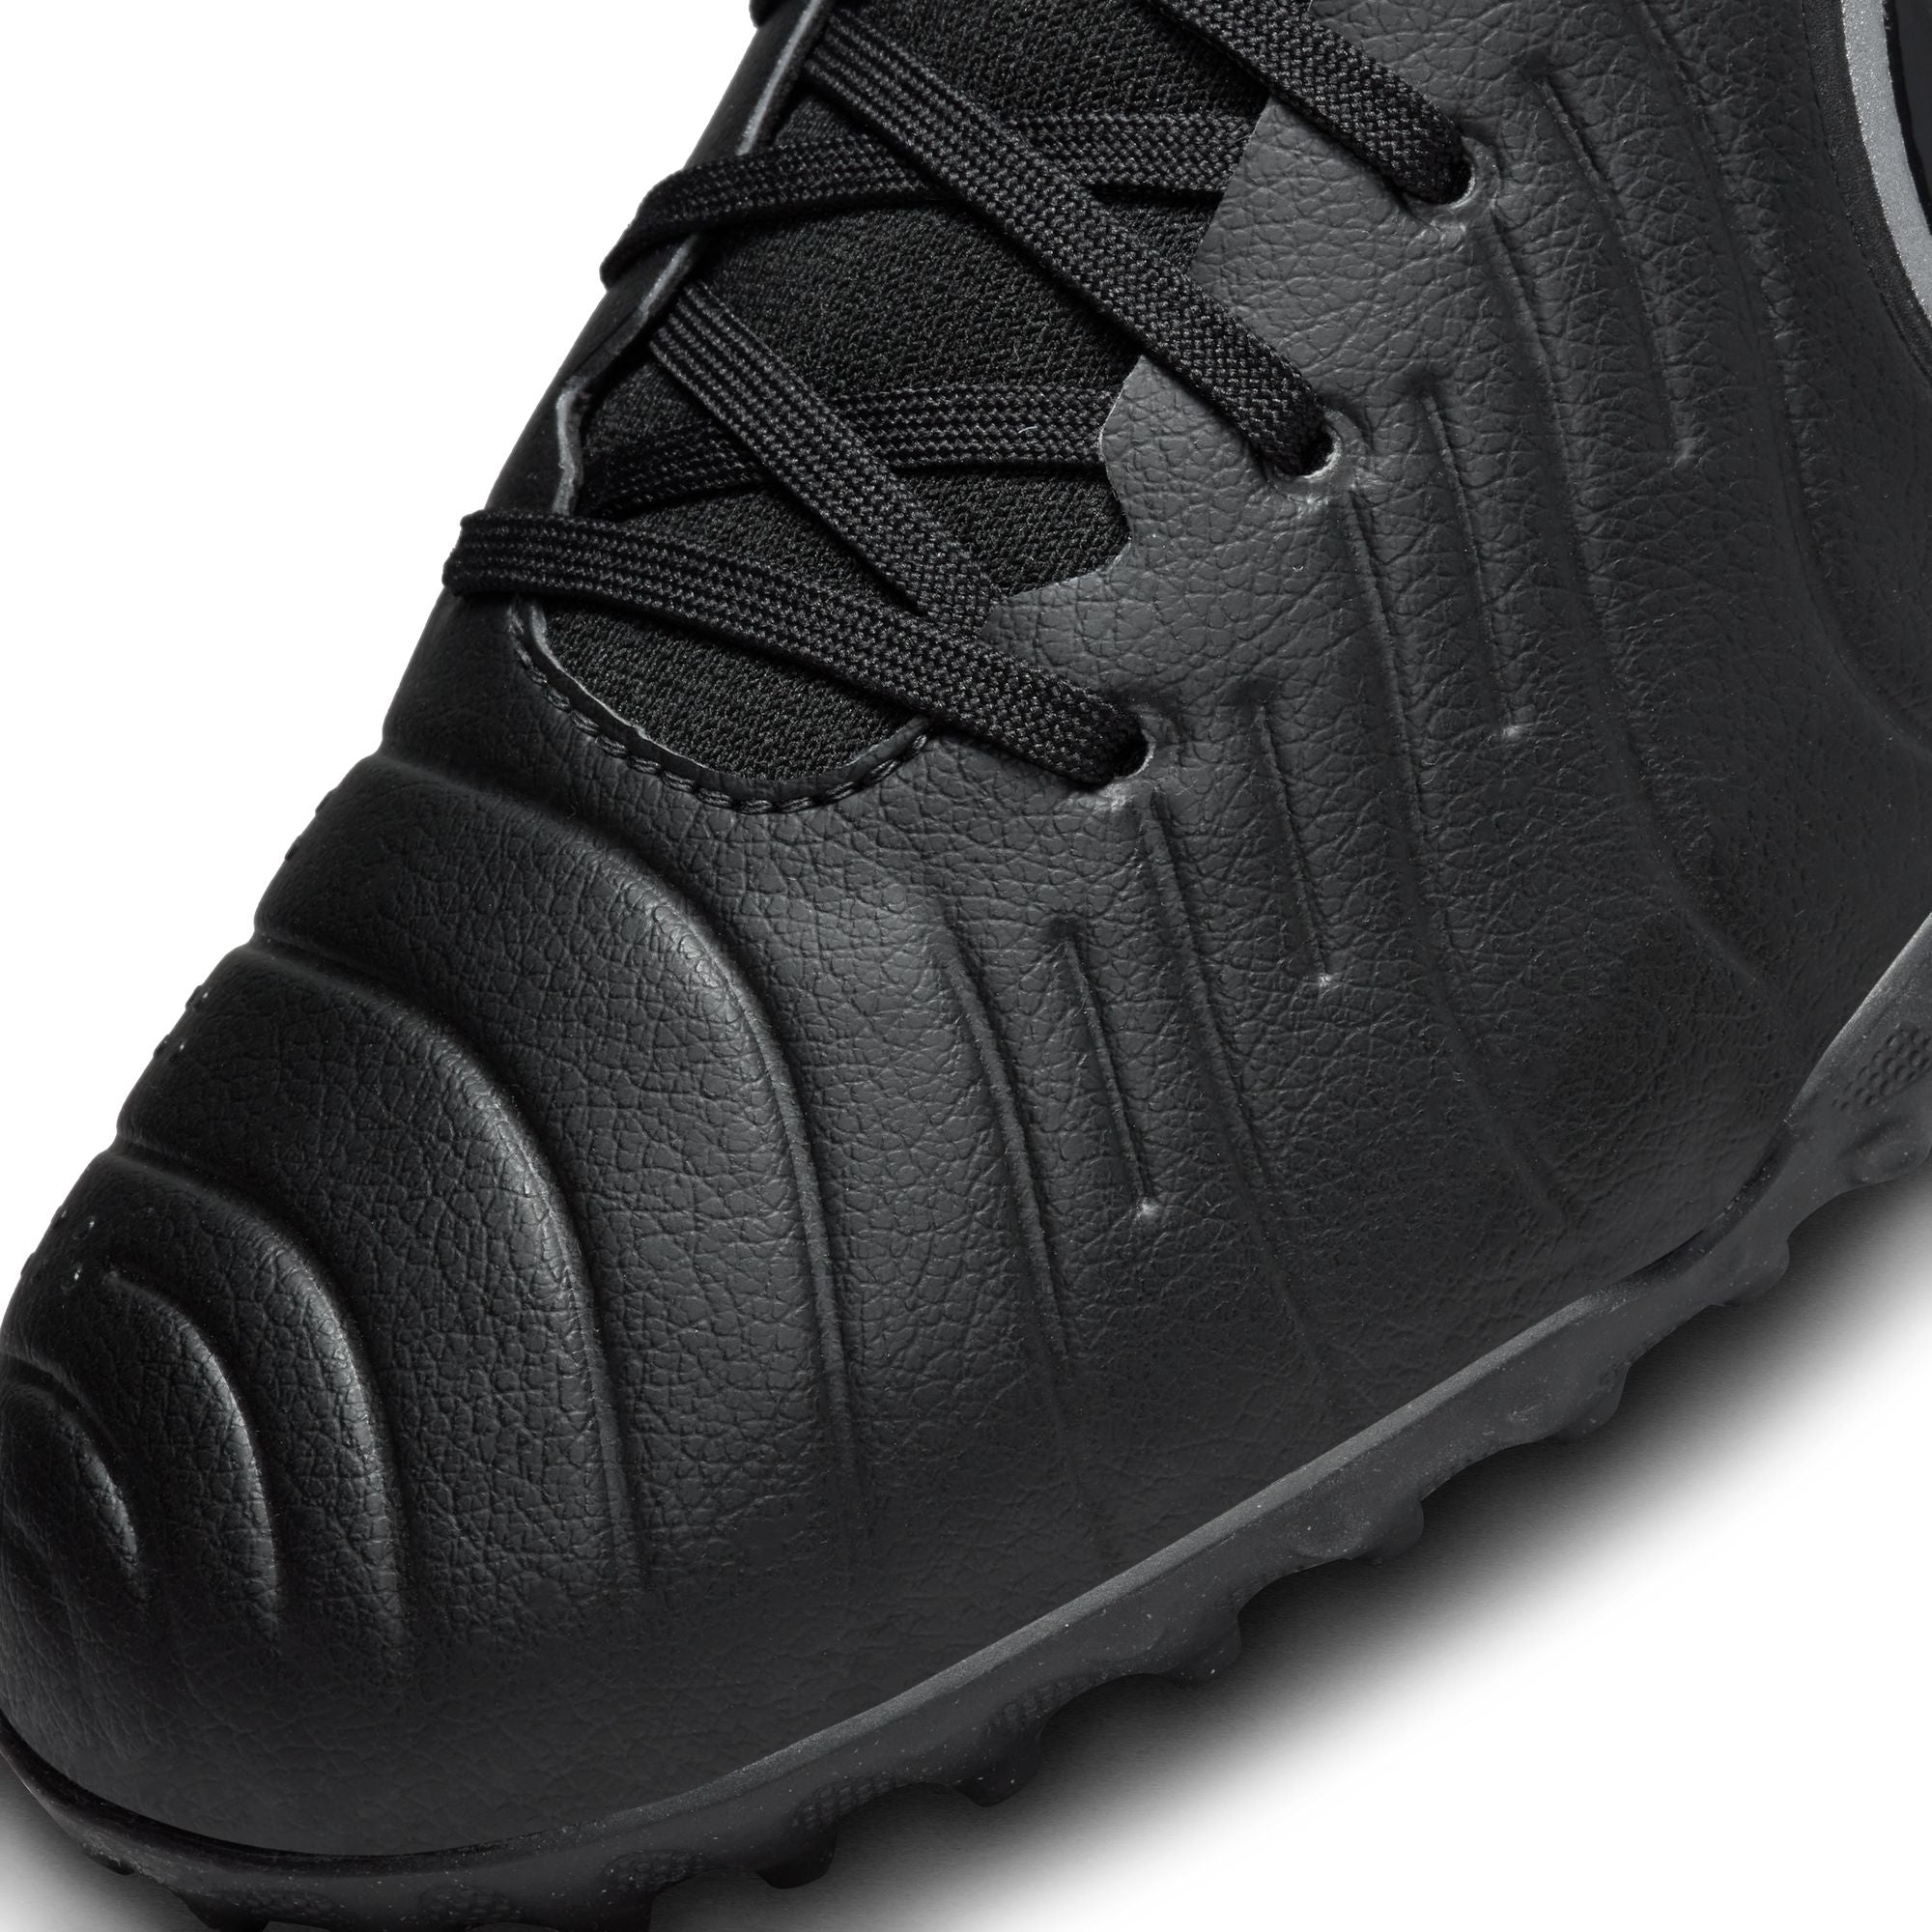 Tiempo Legend 10 Pro Soccer Shoes